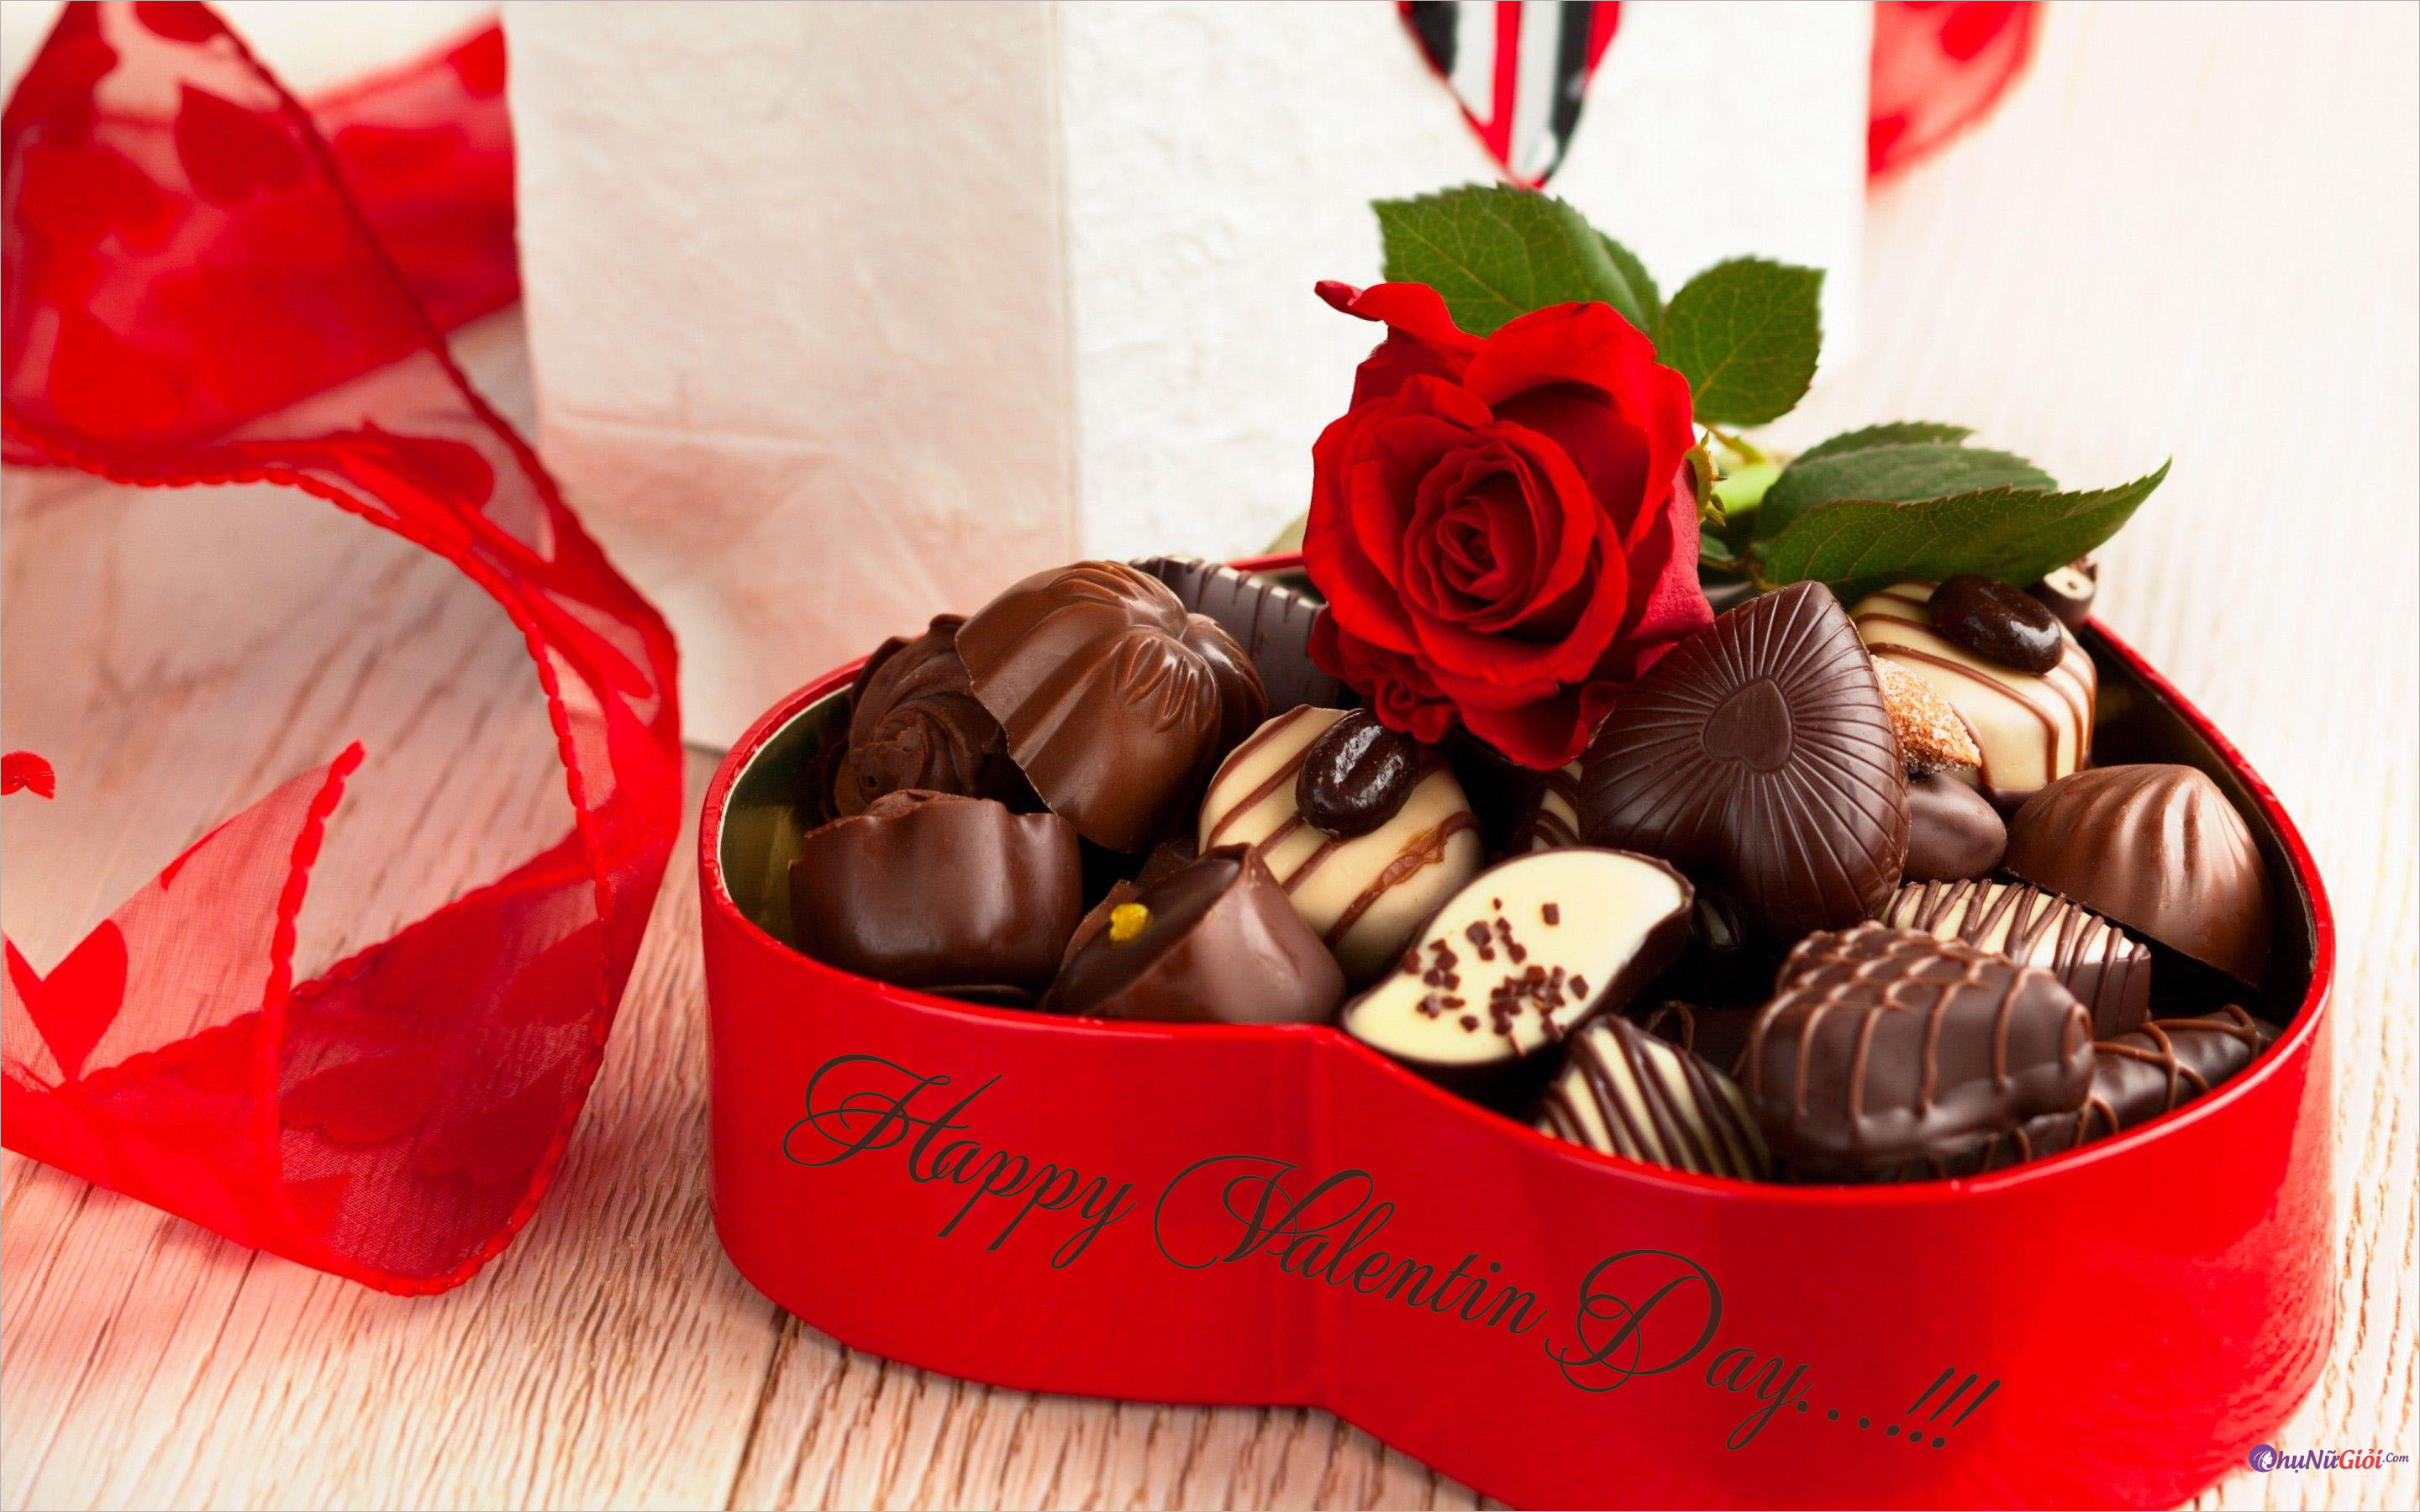 Sô-cô-la Valentine là món quà không thể thiếu trong ngày lễ tình nhân. Hãy đến với hình ảnh Sô-cô-la Valentine để ngắm nhìn những chiếc bánh socola tràn đầy lớp vỏ bóng loáng và đầy mùi hương ngọt ngào.